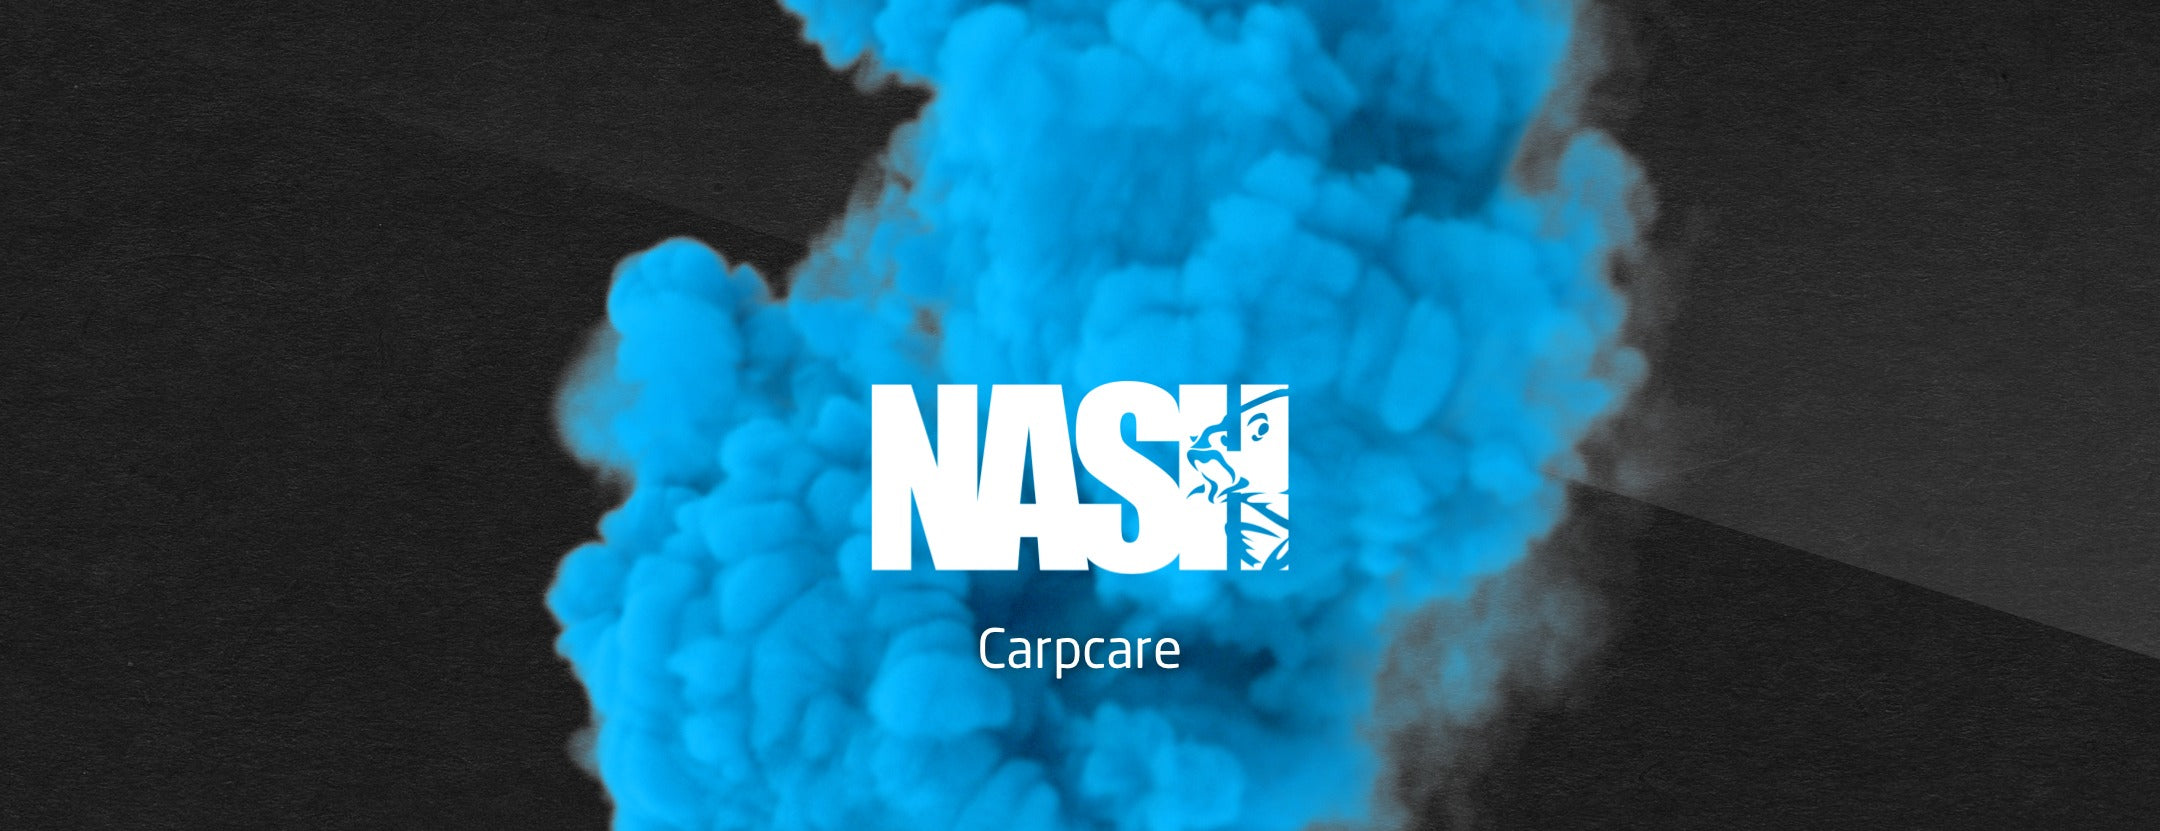 Nash-Carpcare